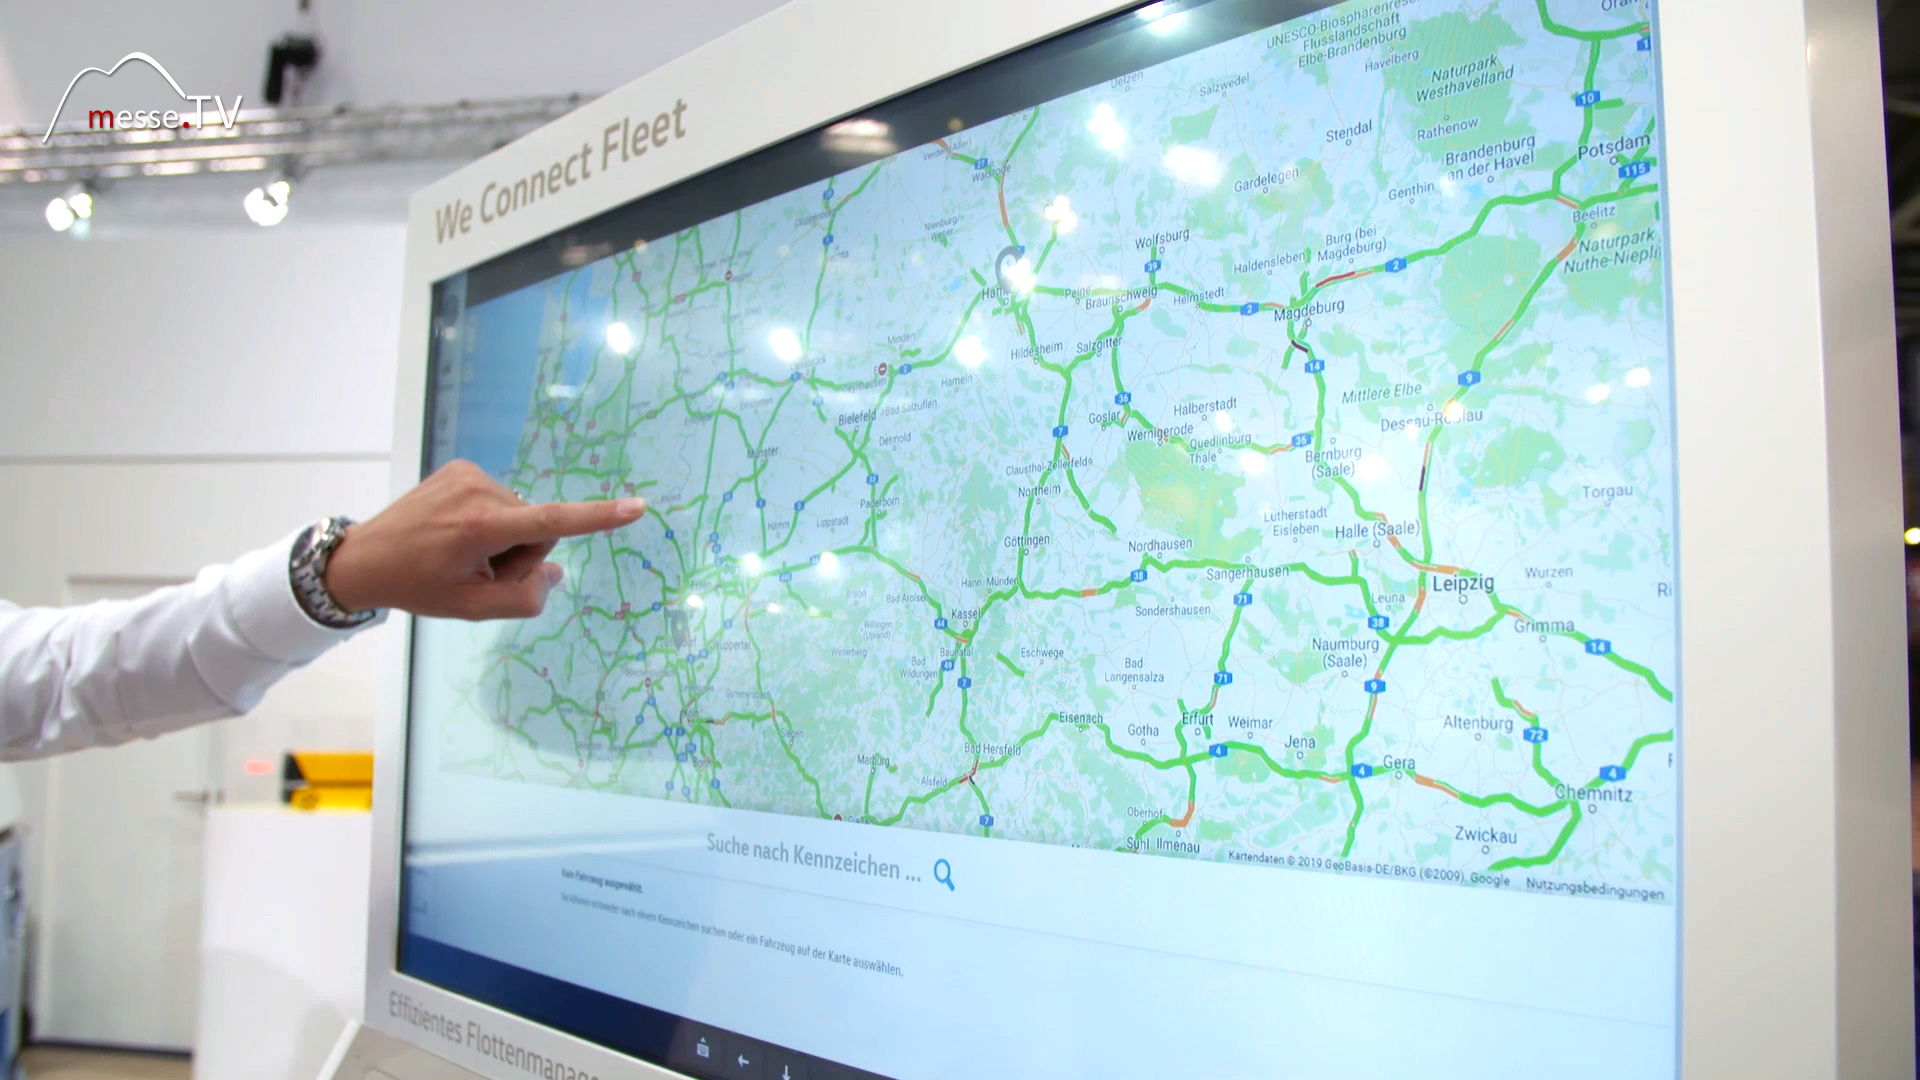 VW Flottenmanagement Monitor Kartenübersicht transport logistic 2019 München